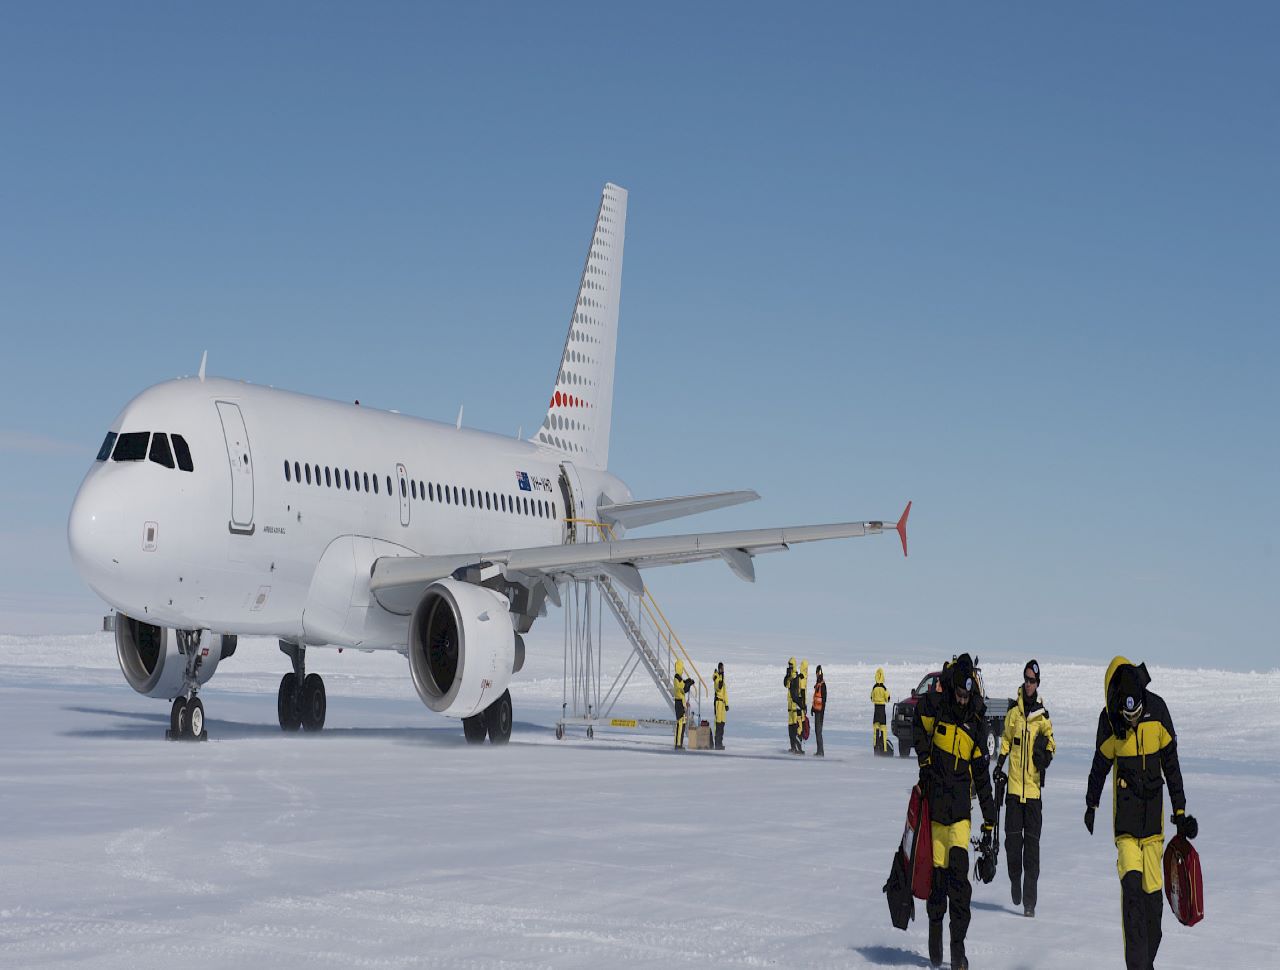 Australia scraps plan to build runway in Antarctica